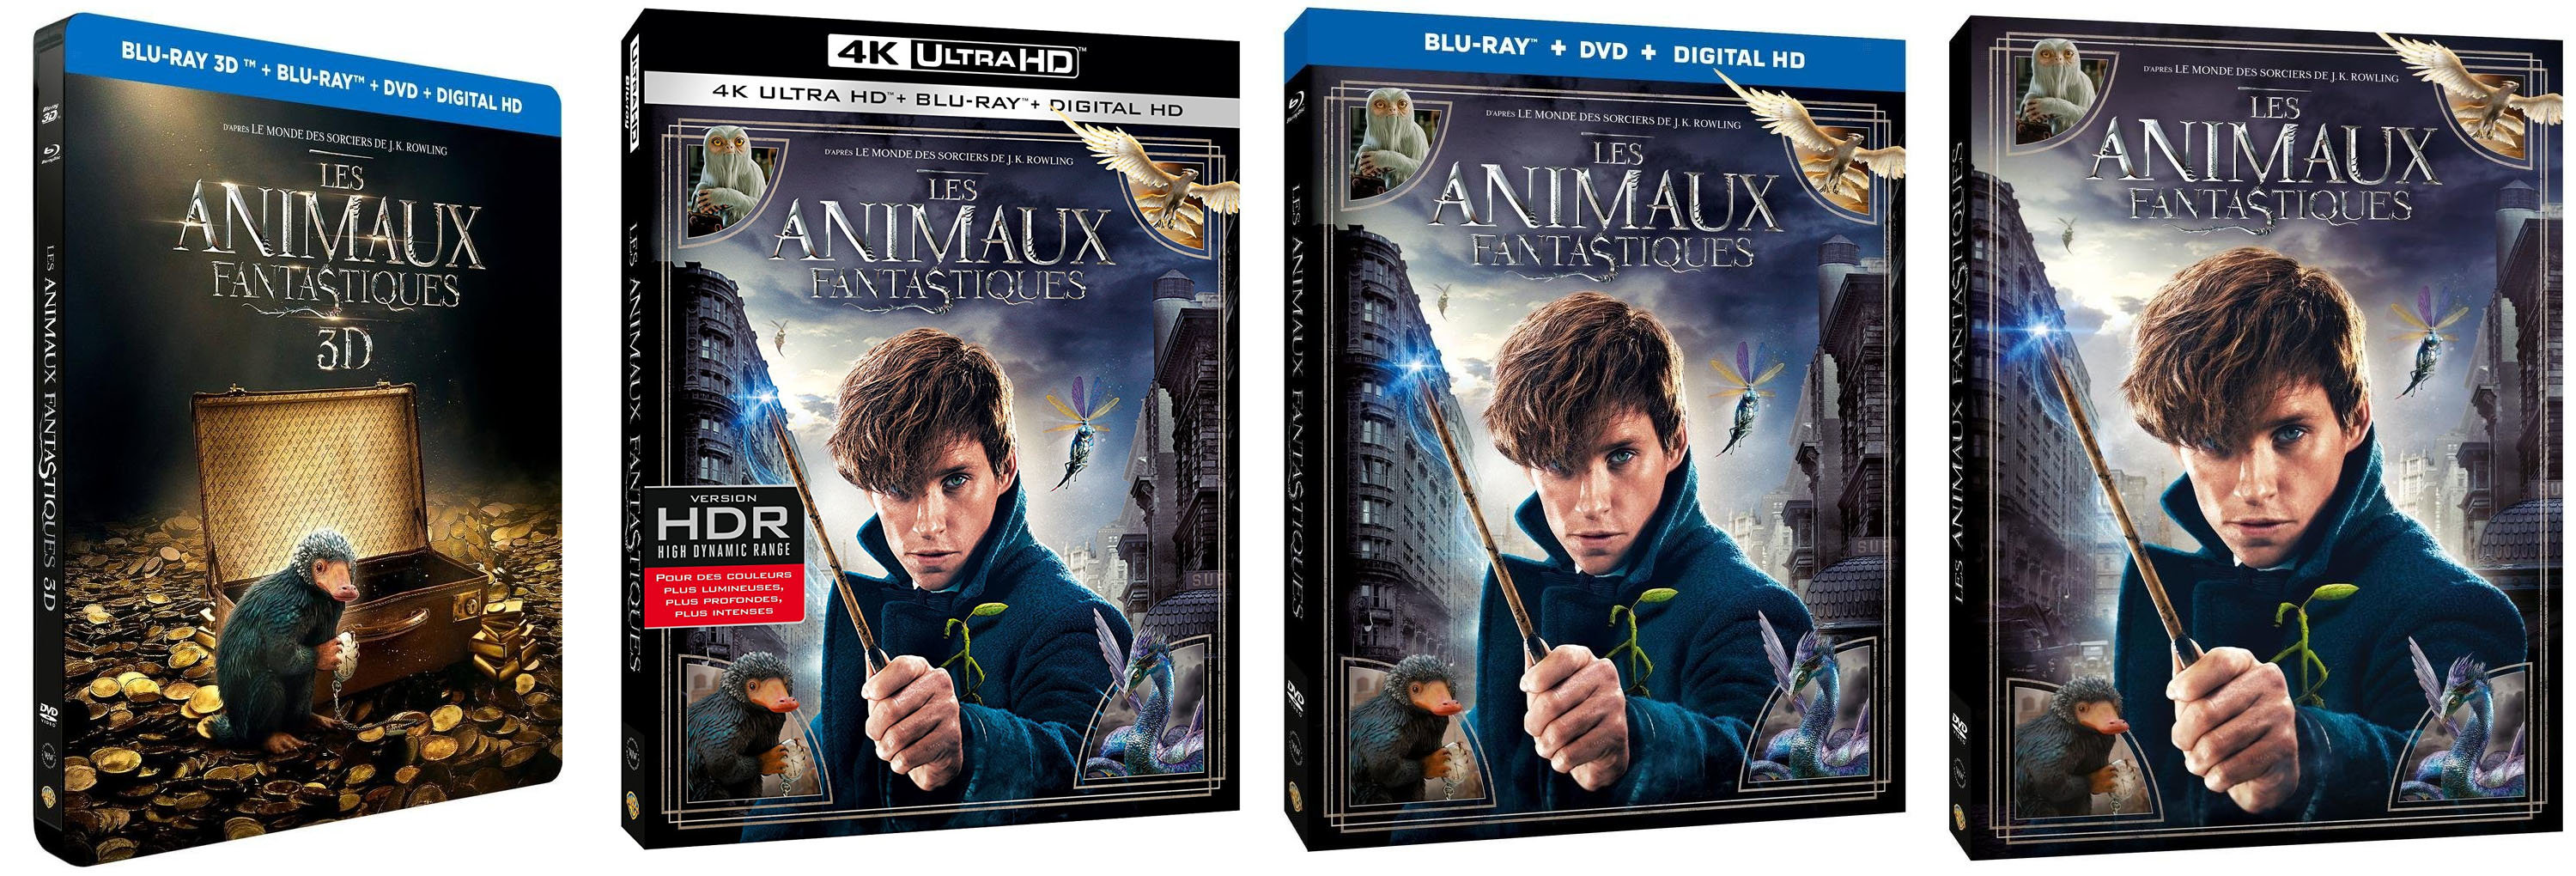 Les Animaux Fantastiques Blu-Ray et DVD